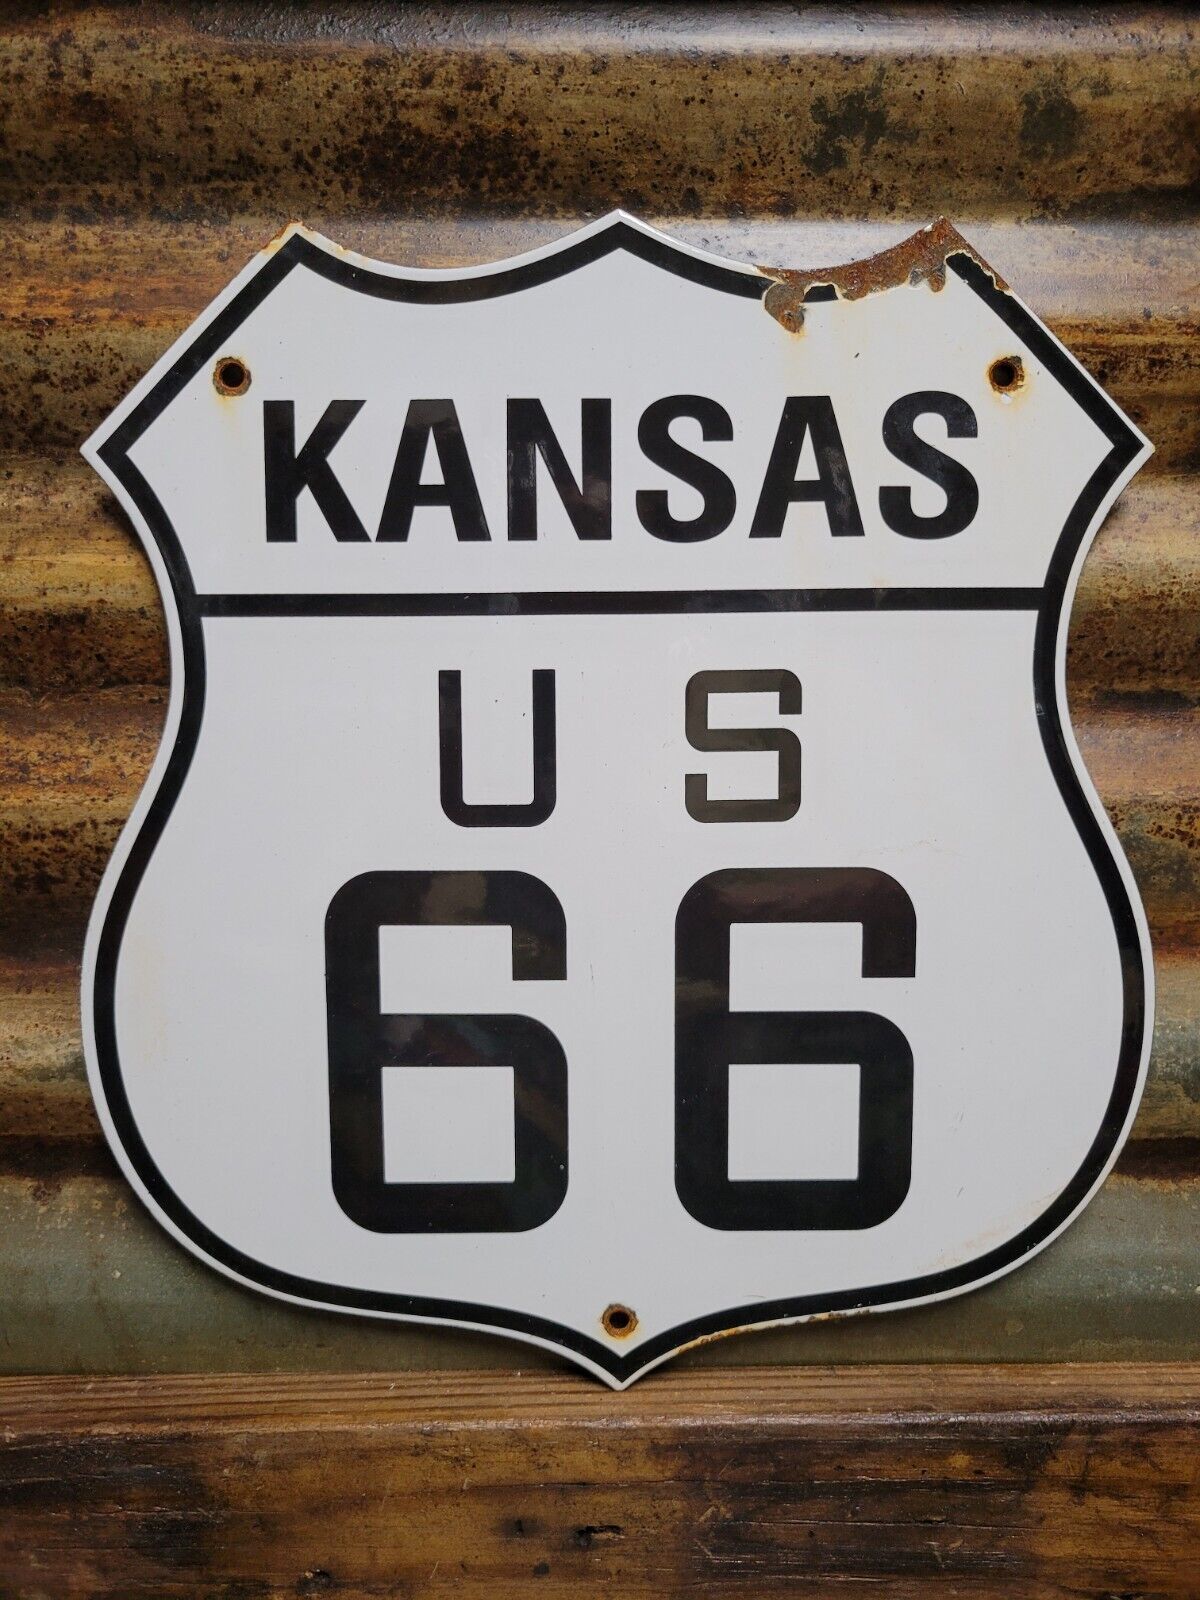 VINTAGE KANSAS ROUTE 66 PORCELAIN SIGN US HIGHWAY ROAD TRANSIT SHIELD MARKER